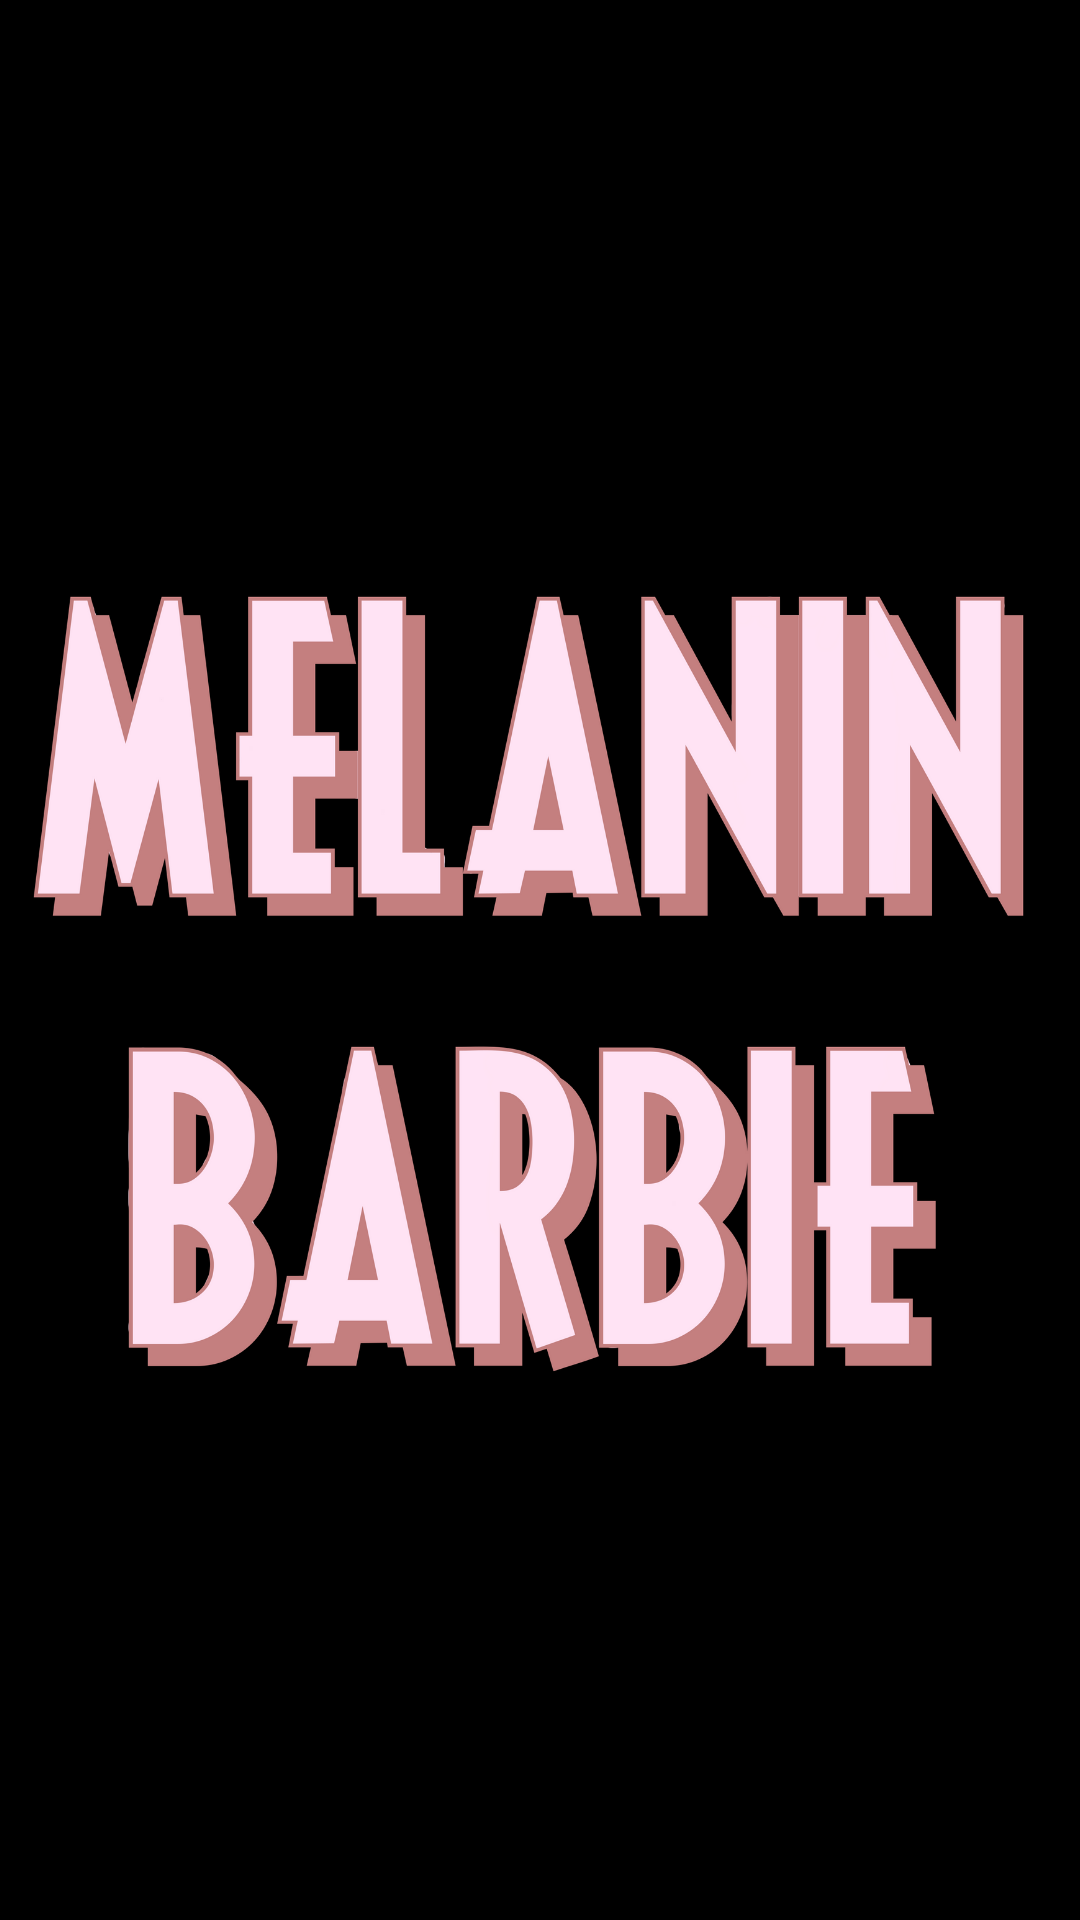 Pastel Melanin Barbie Sticker / Pink Aesthetic BLM Sticker /. Etsy. Black aesthetic wallpaper, Black girl magic art, Black girl cartoon